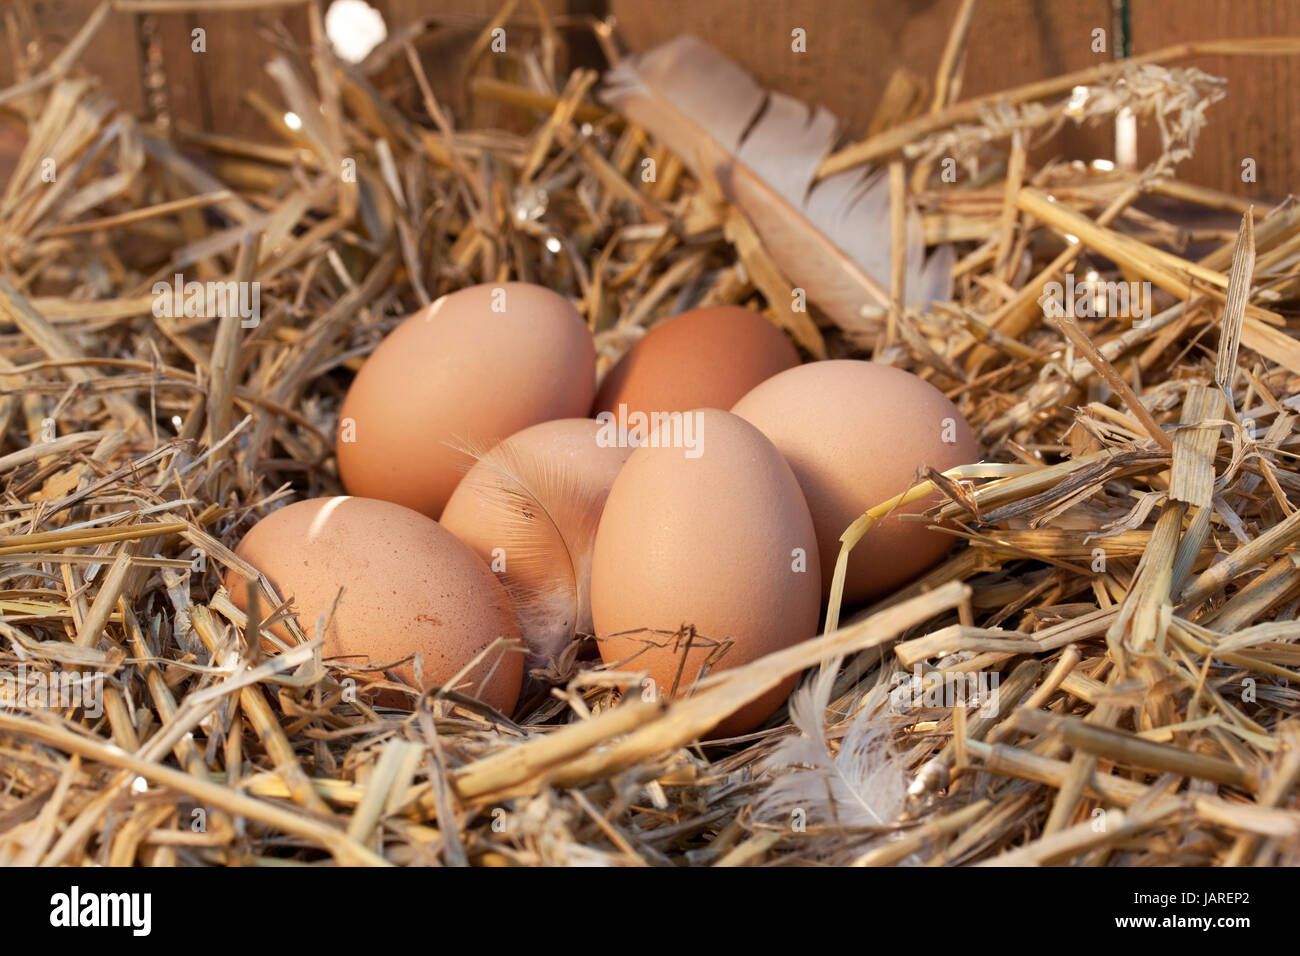 Eiern aus Freilandhaltung Stockfoto